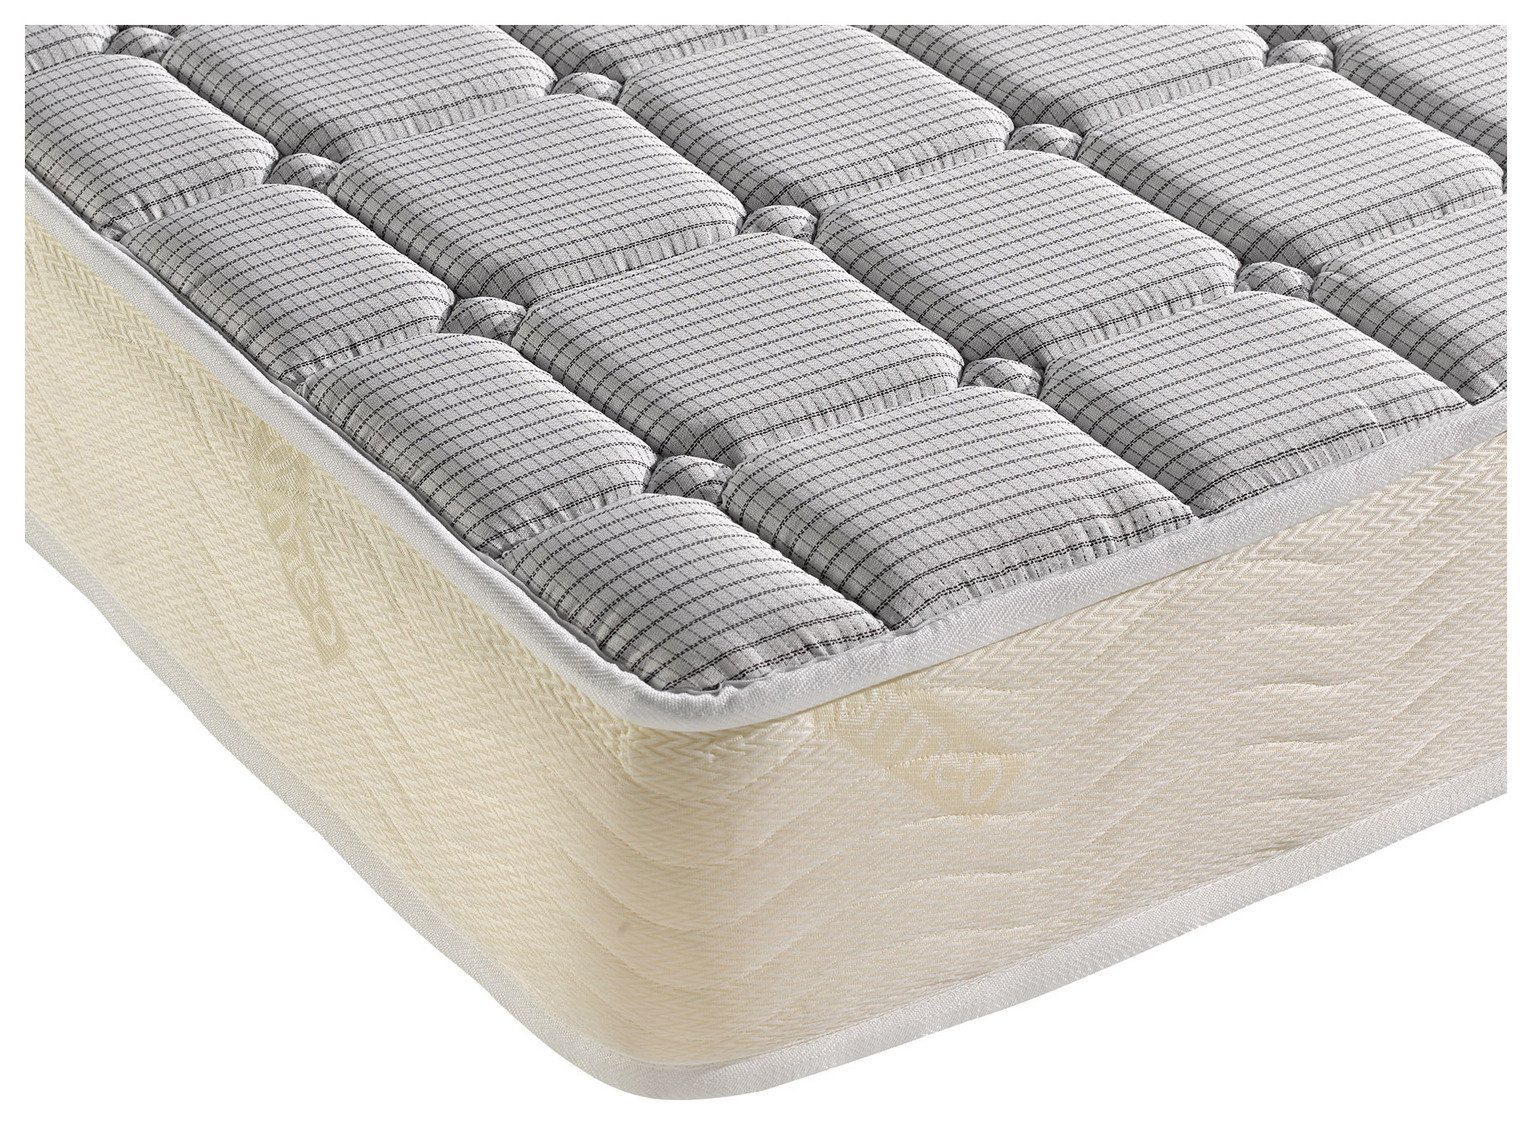 6in memory foam mattress full